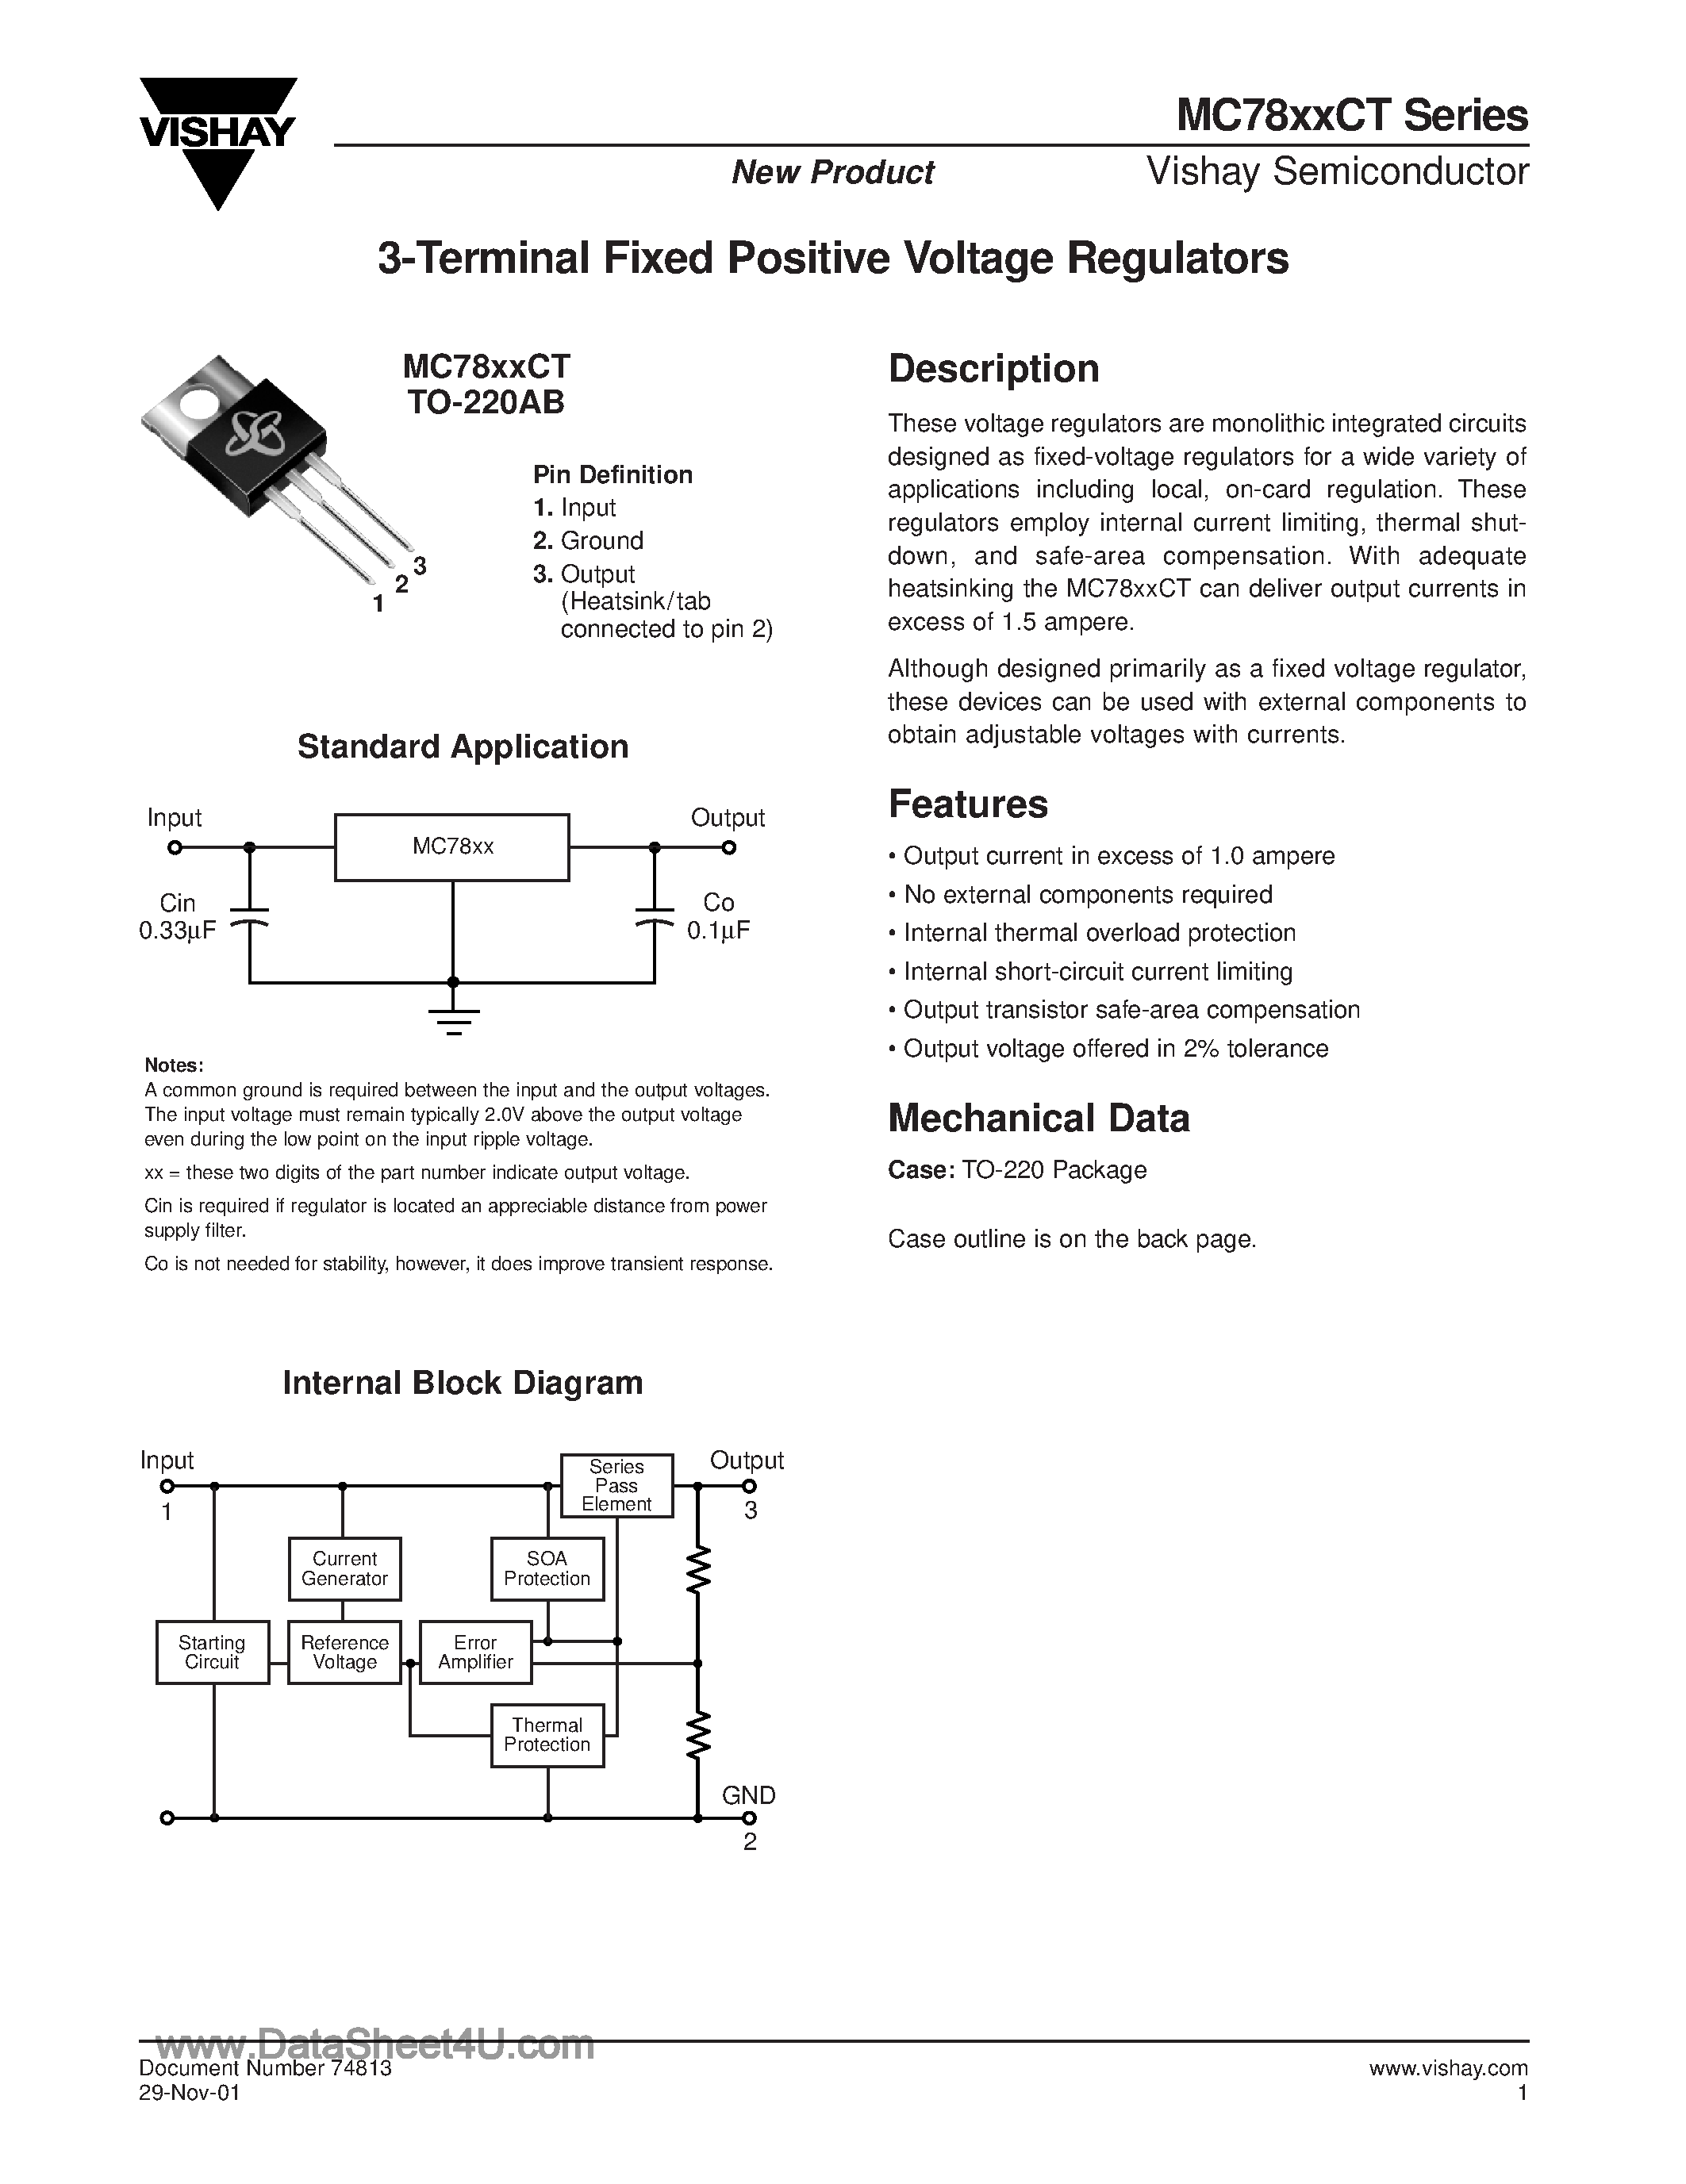 Даташит MC7812CT - (MC78xxCT) 3-Terminal Fixed Positive Voltage Regulator страница 1